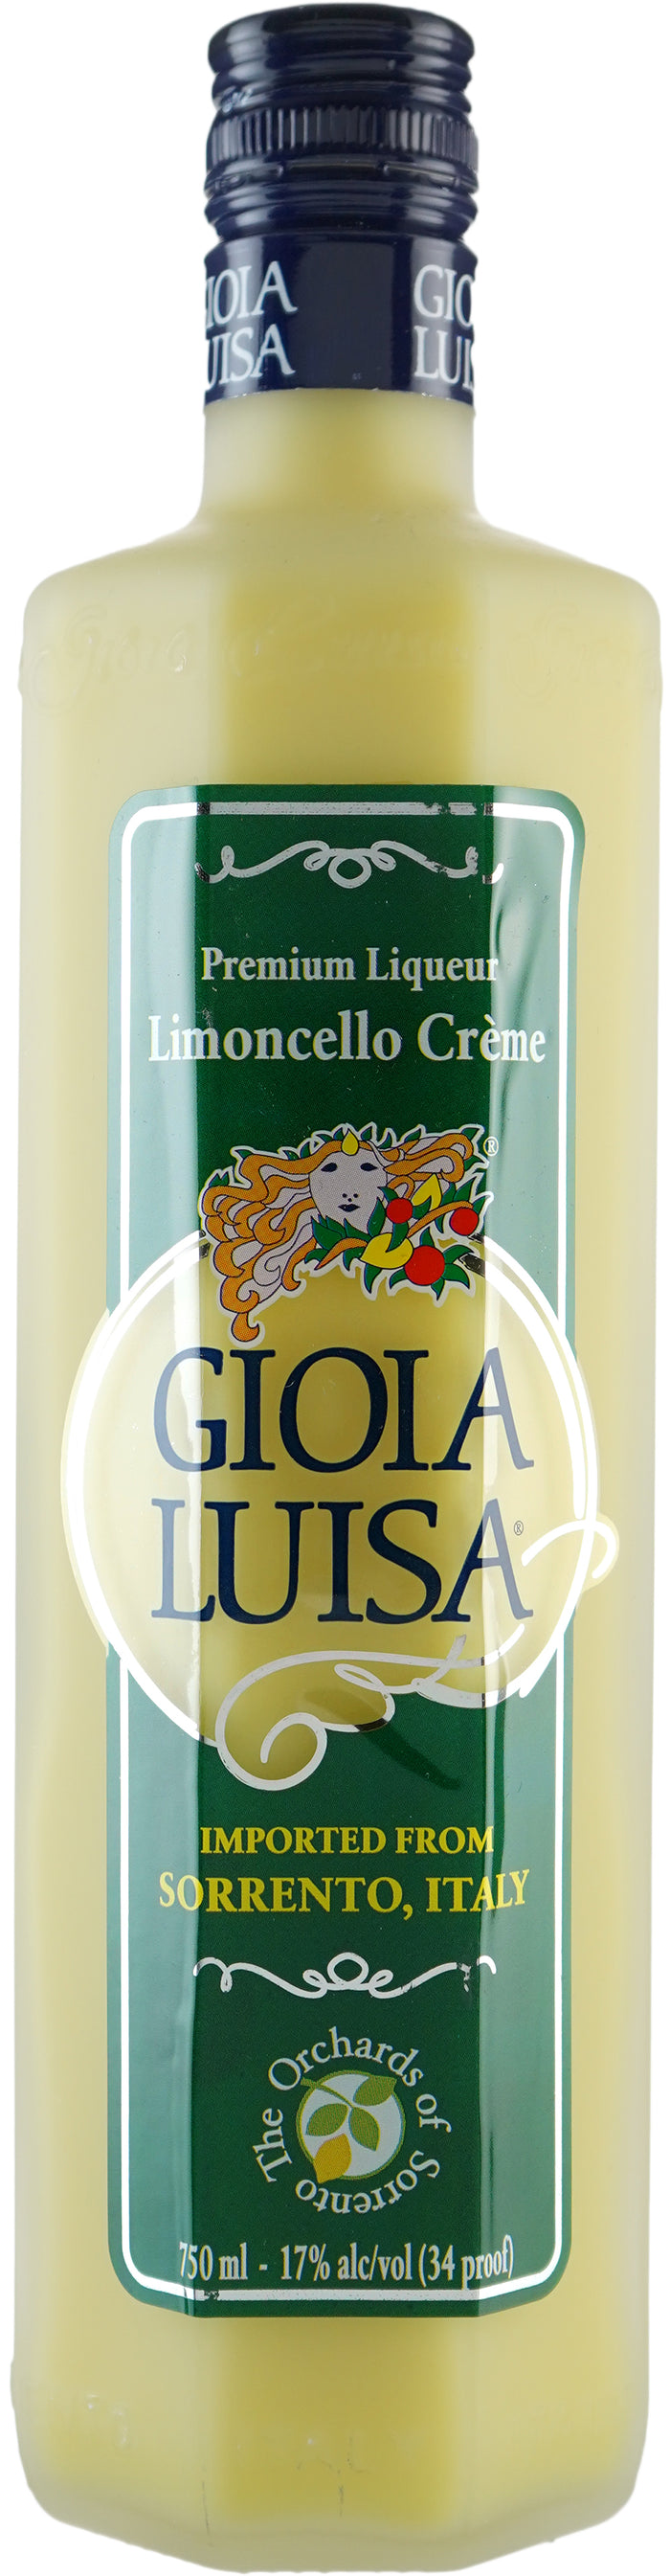 Gioia Luisa Cream Lemoncello Liqueur